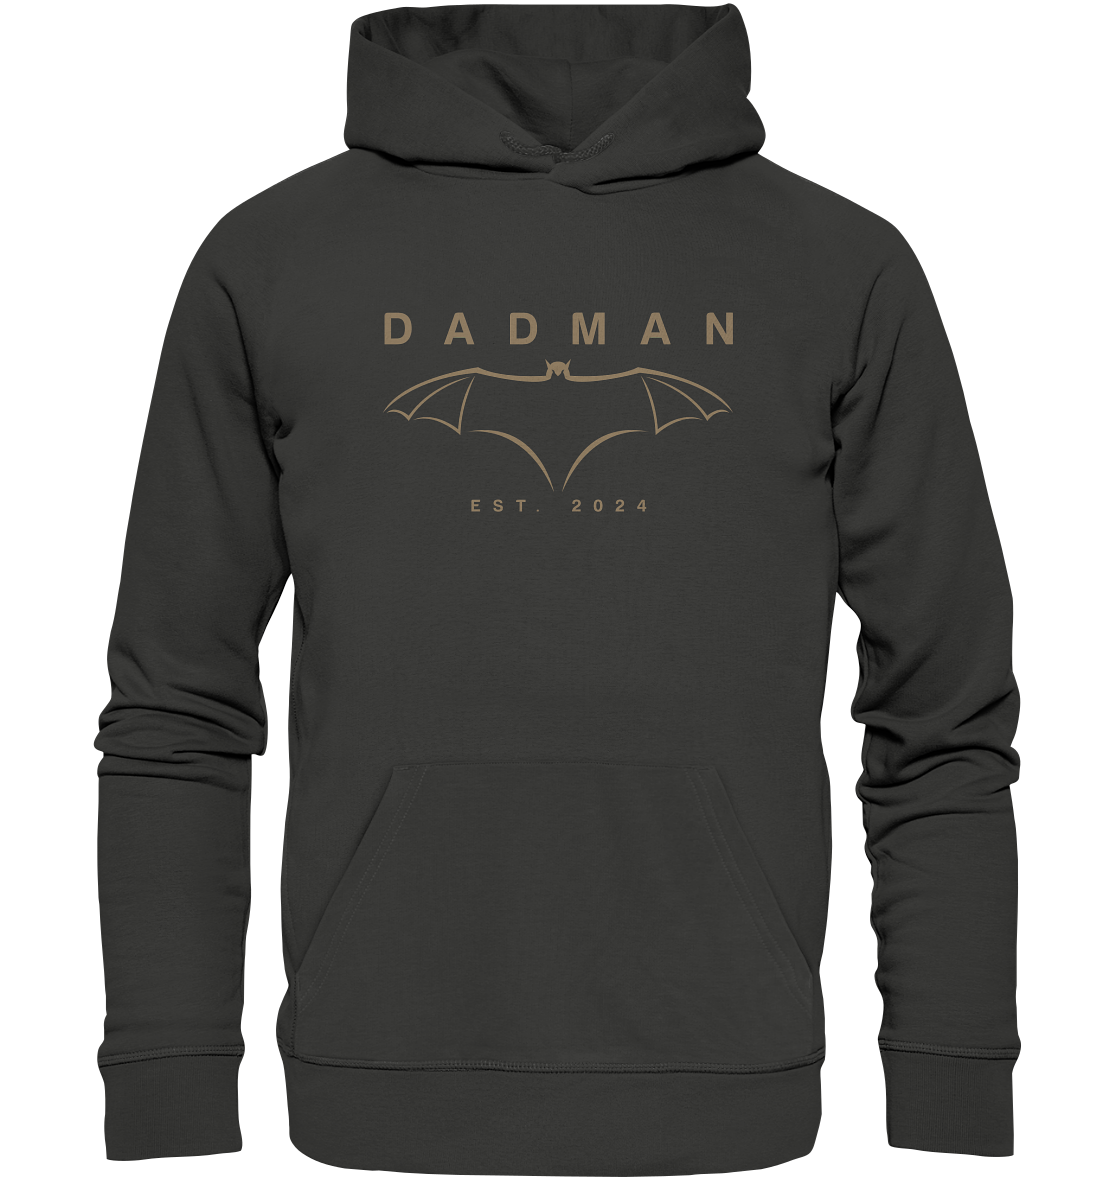 Dadman Modern Edition  - Premium Unisex Hoodie